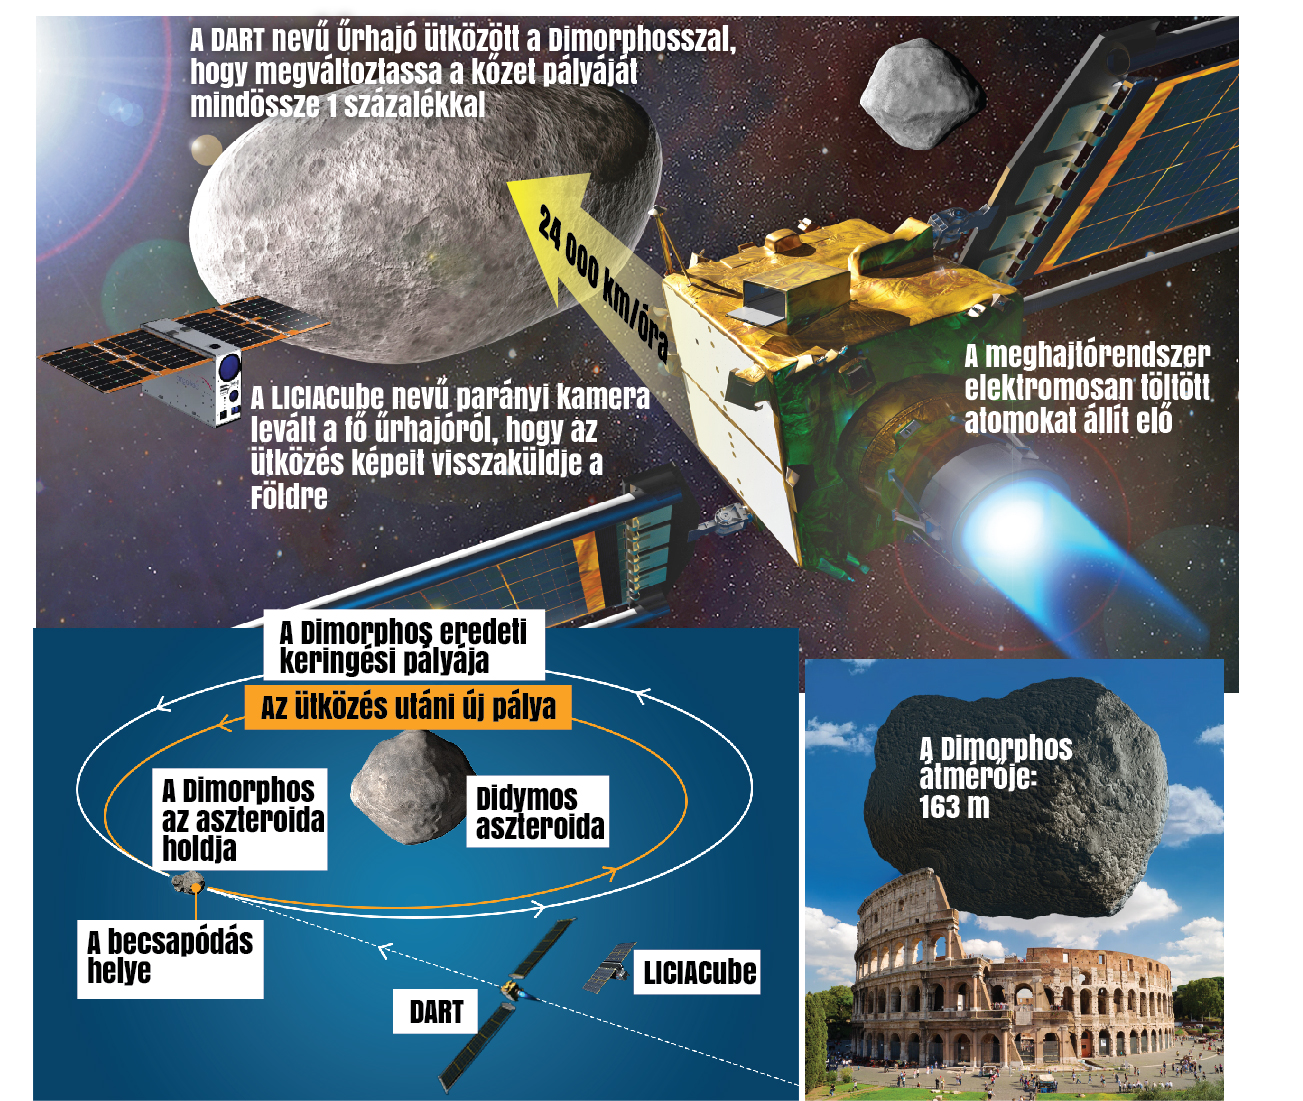 Sikerült a NASA akciója: eltérítették az aszteroidát - Blikk